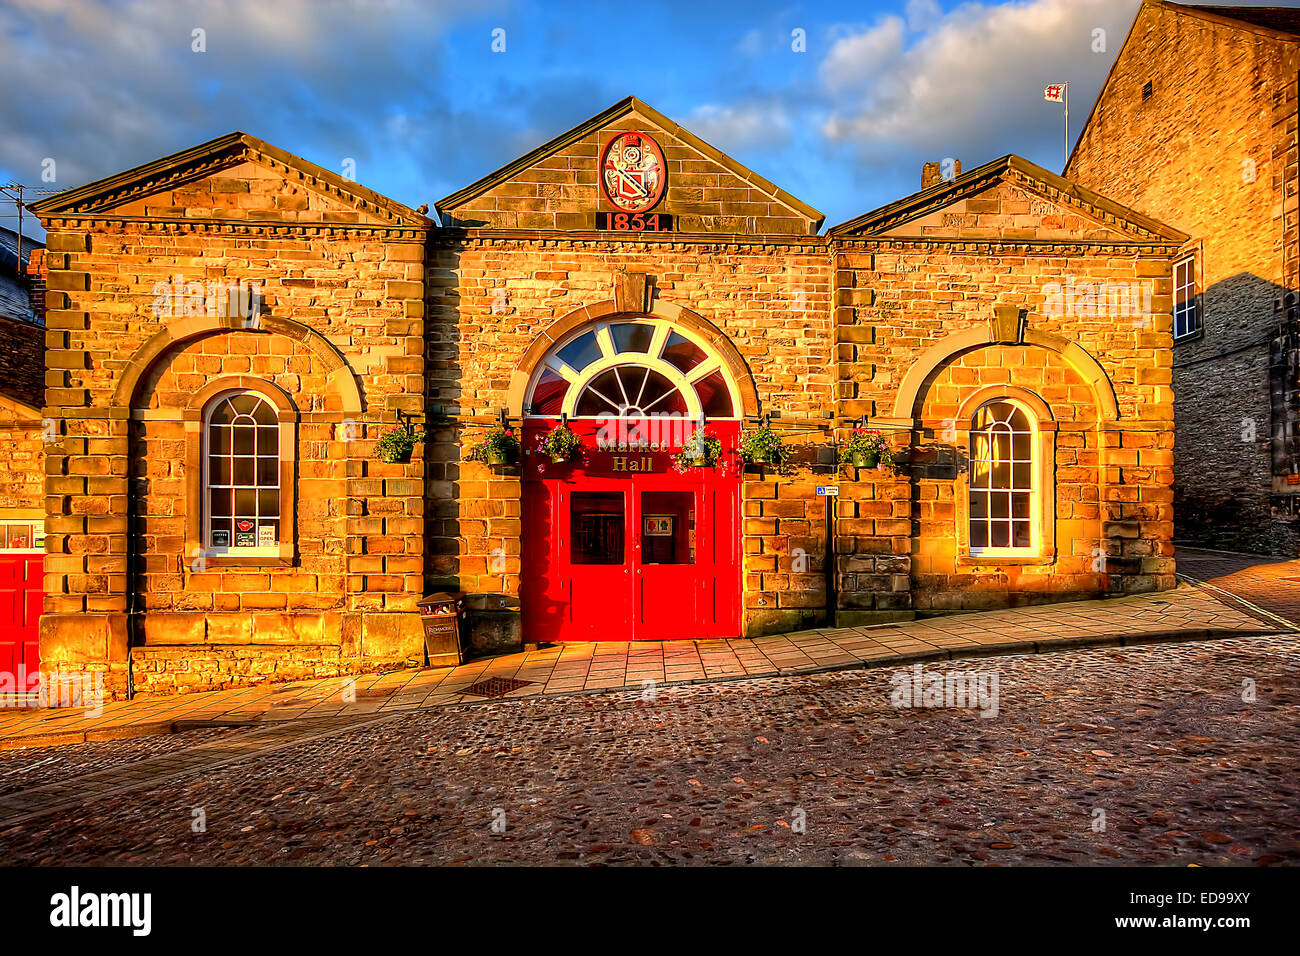 Im Jahre 1854 gebaut ist der viktorianischen Markthalle in Richmond, North Yorkshire. Beste Licht Bilder anzeigen hier jeden Montag, Tuesd Stockfoto